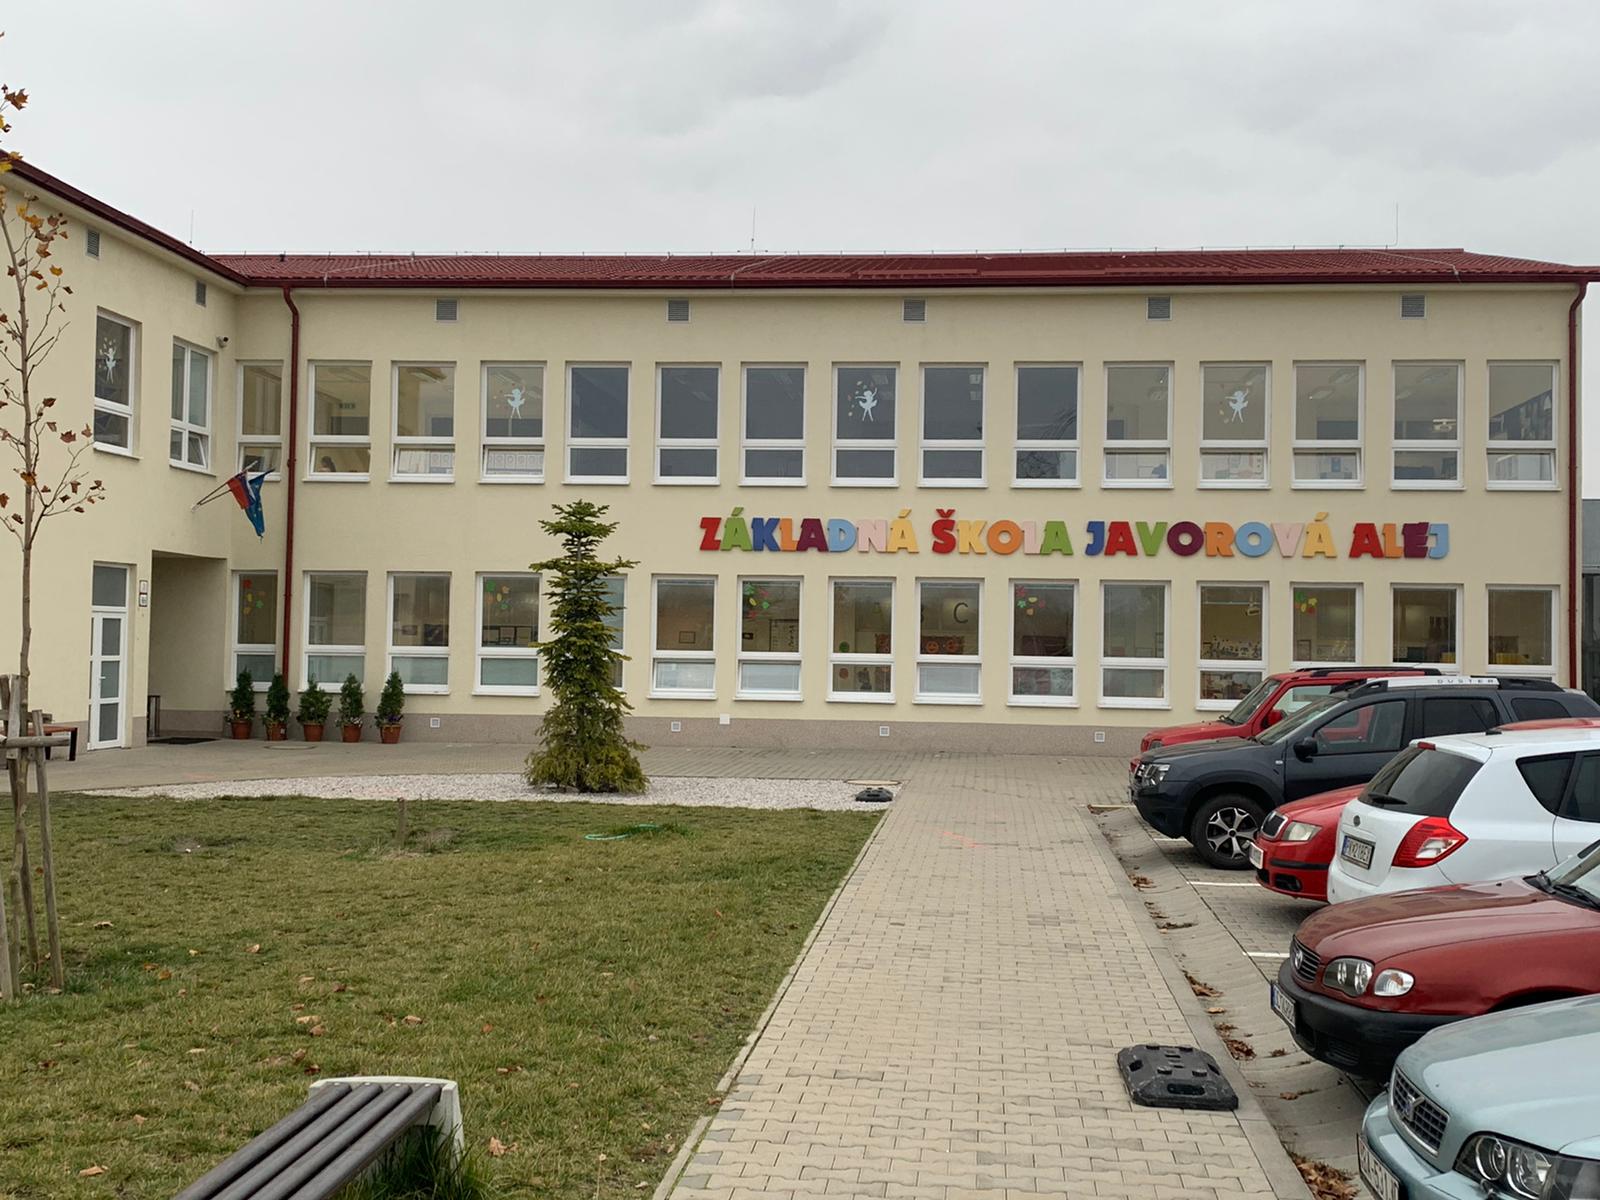 Základná škola Javorová alej